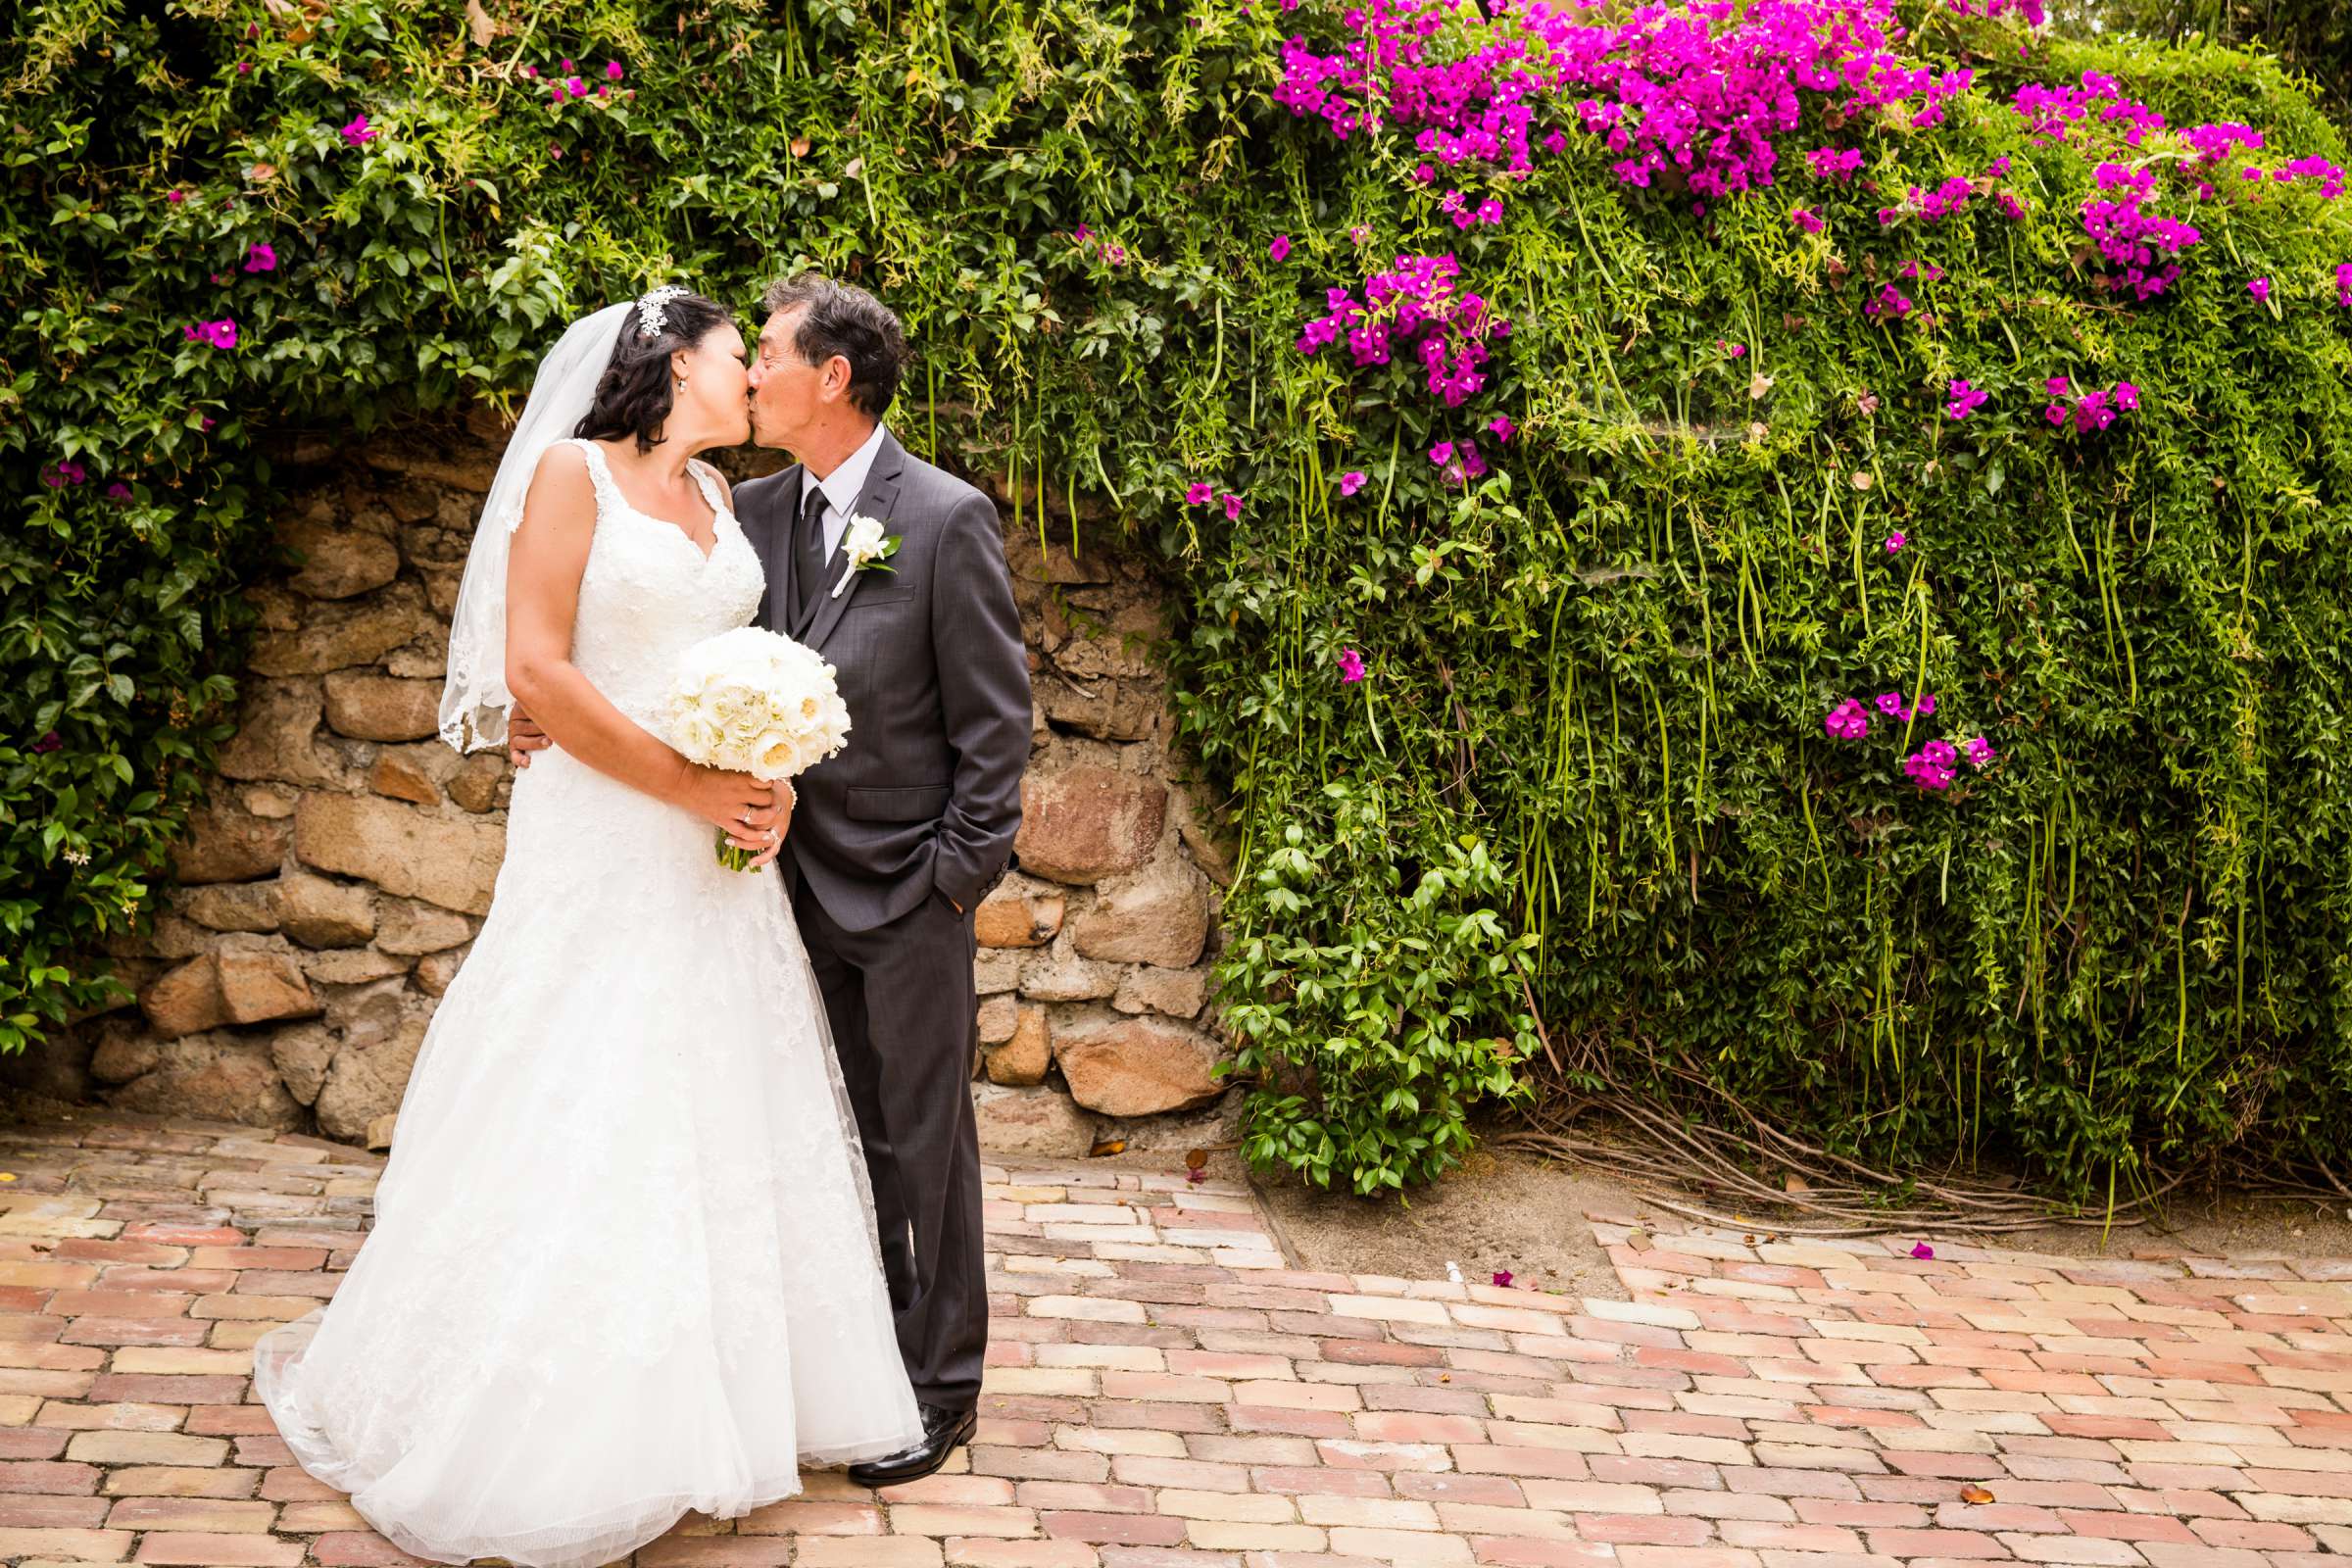 Rancho Buena Vista Adobe Wedding, Ellinor and Frank Wedding Photo #5 by True Photography